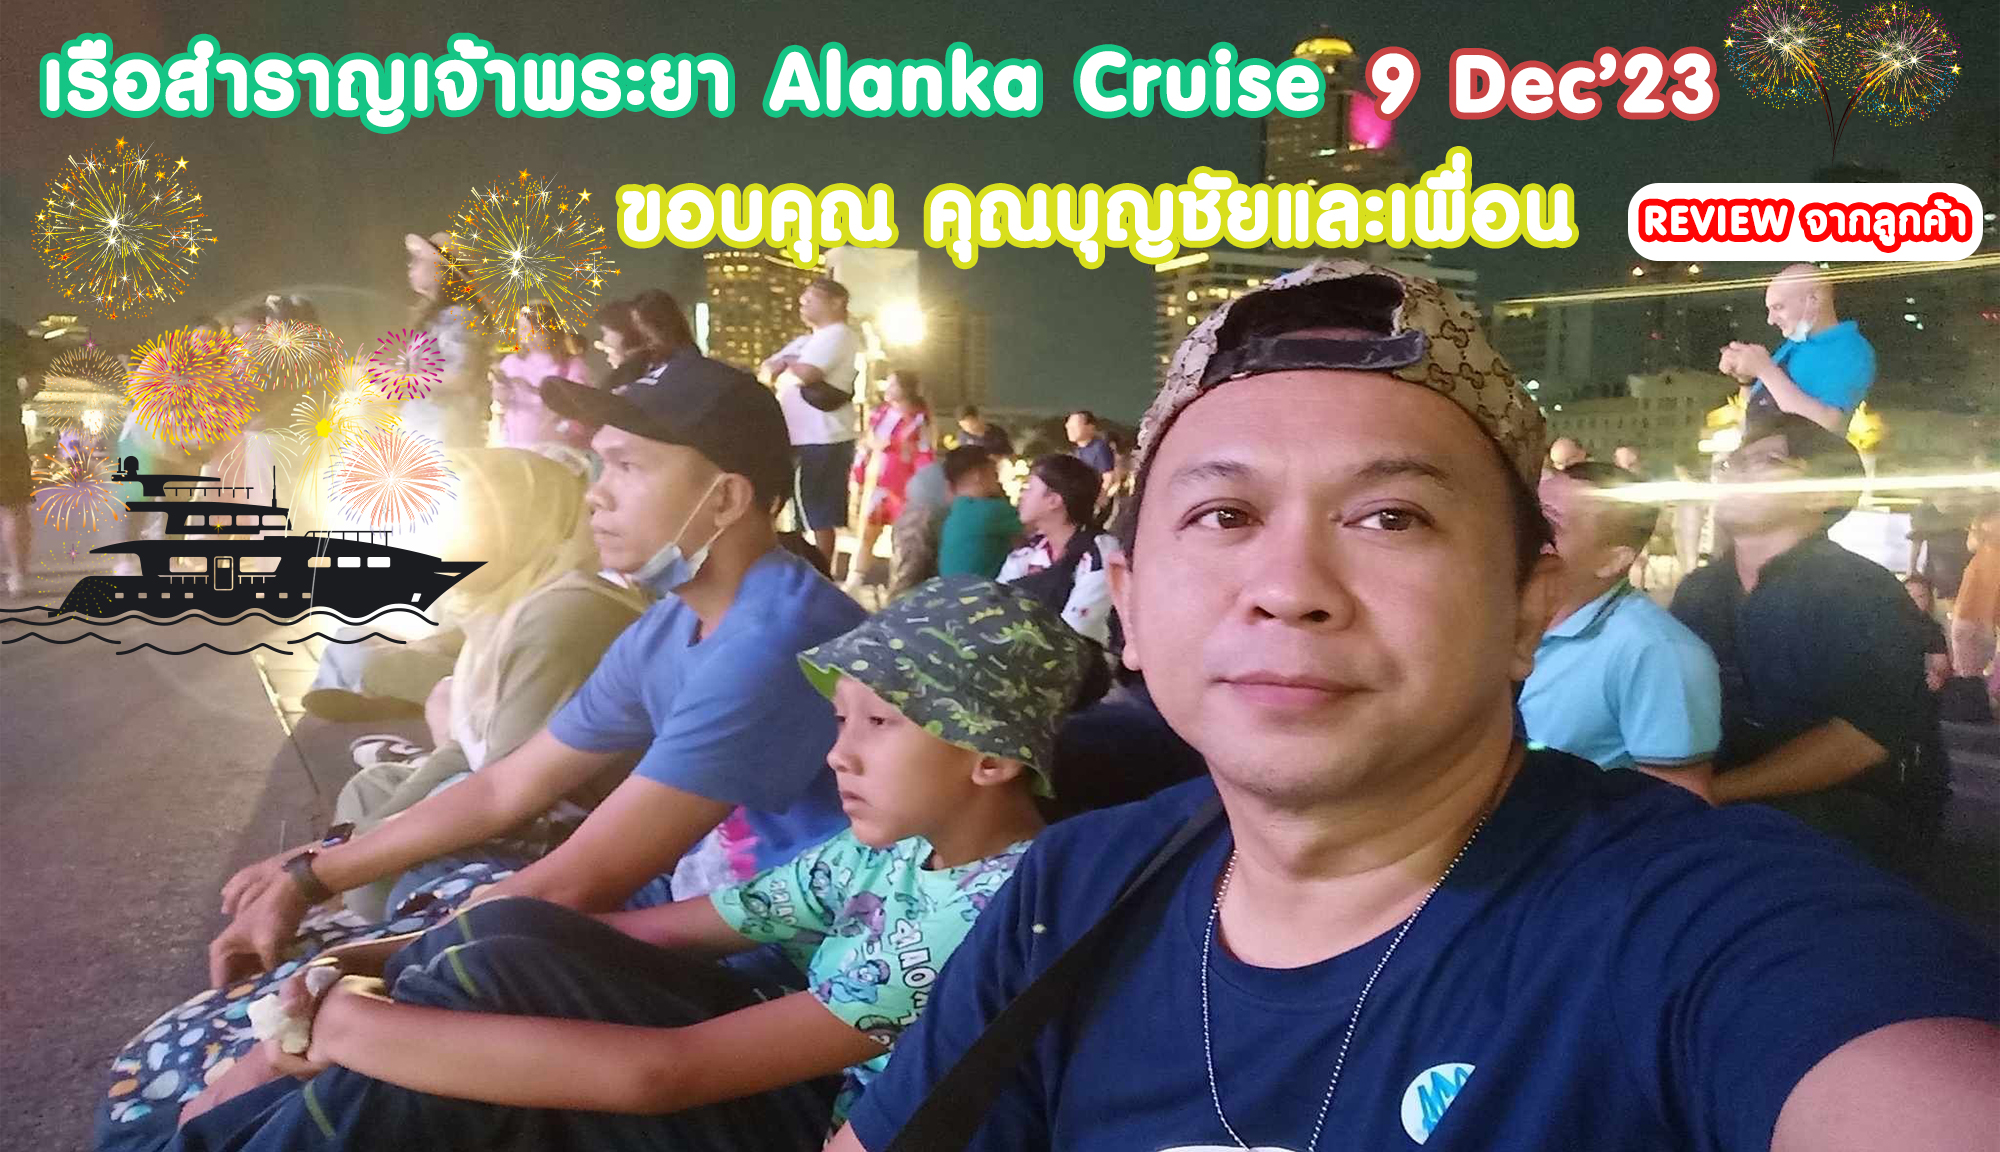 Review ขอบคุณ คุณบุญชัยและเพื่อน เรือสำราญเจ้าพระยา​ Alanka​ Cruise 9 Dec’23